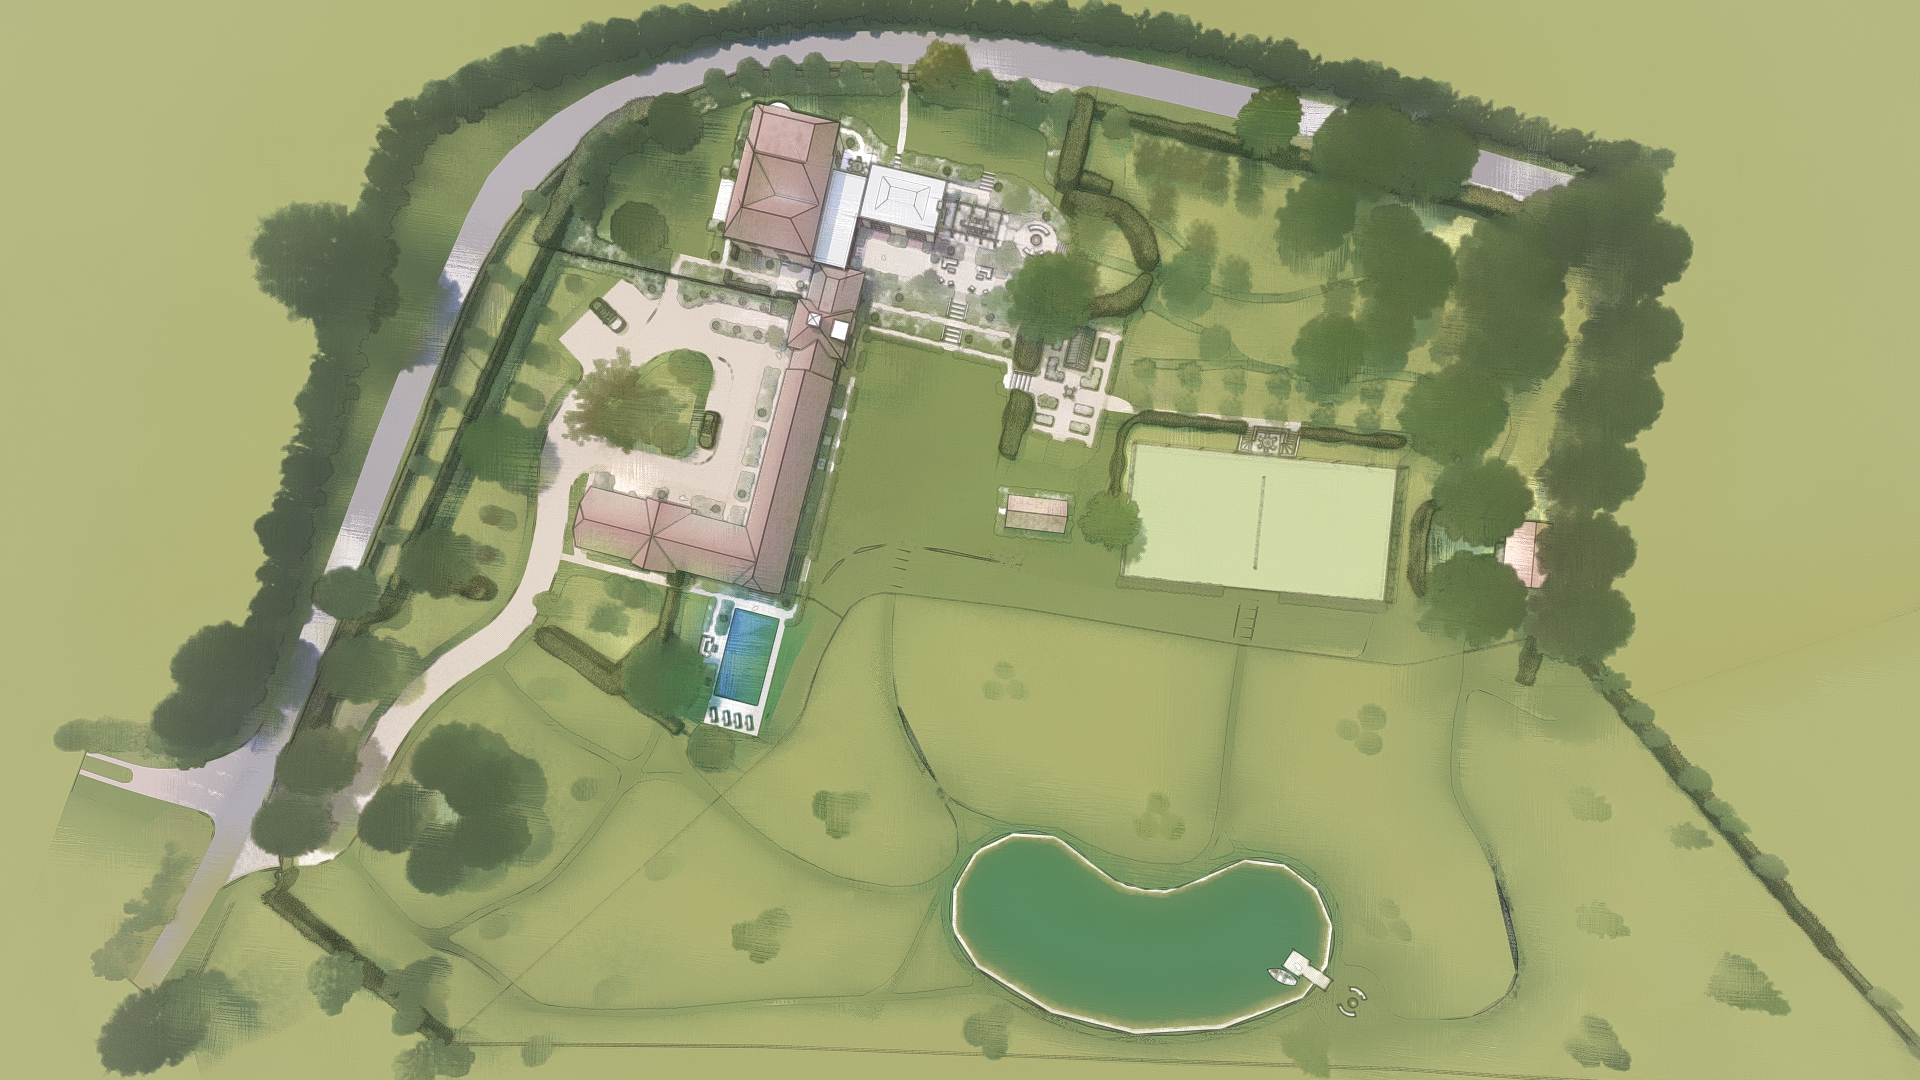 Nicholsons Garden Design - Concept Plan